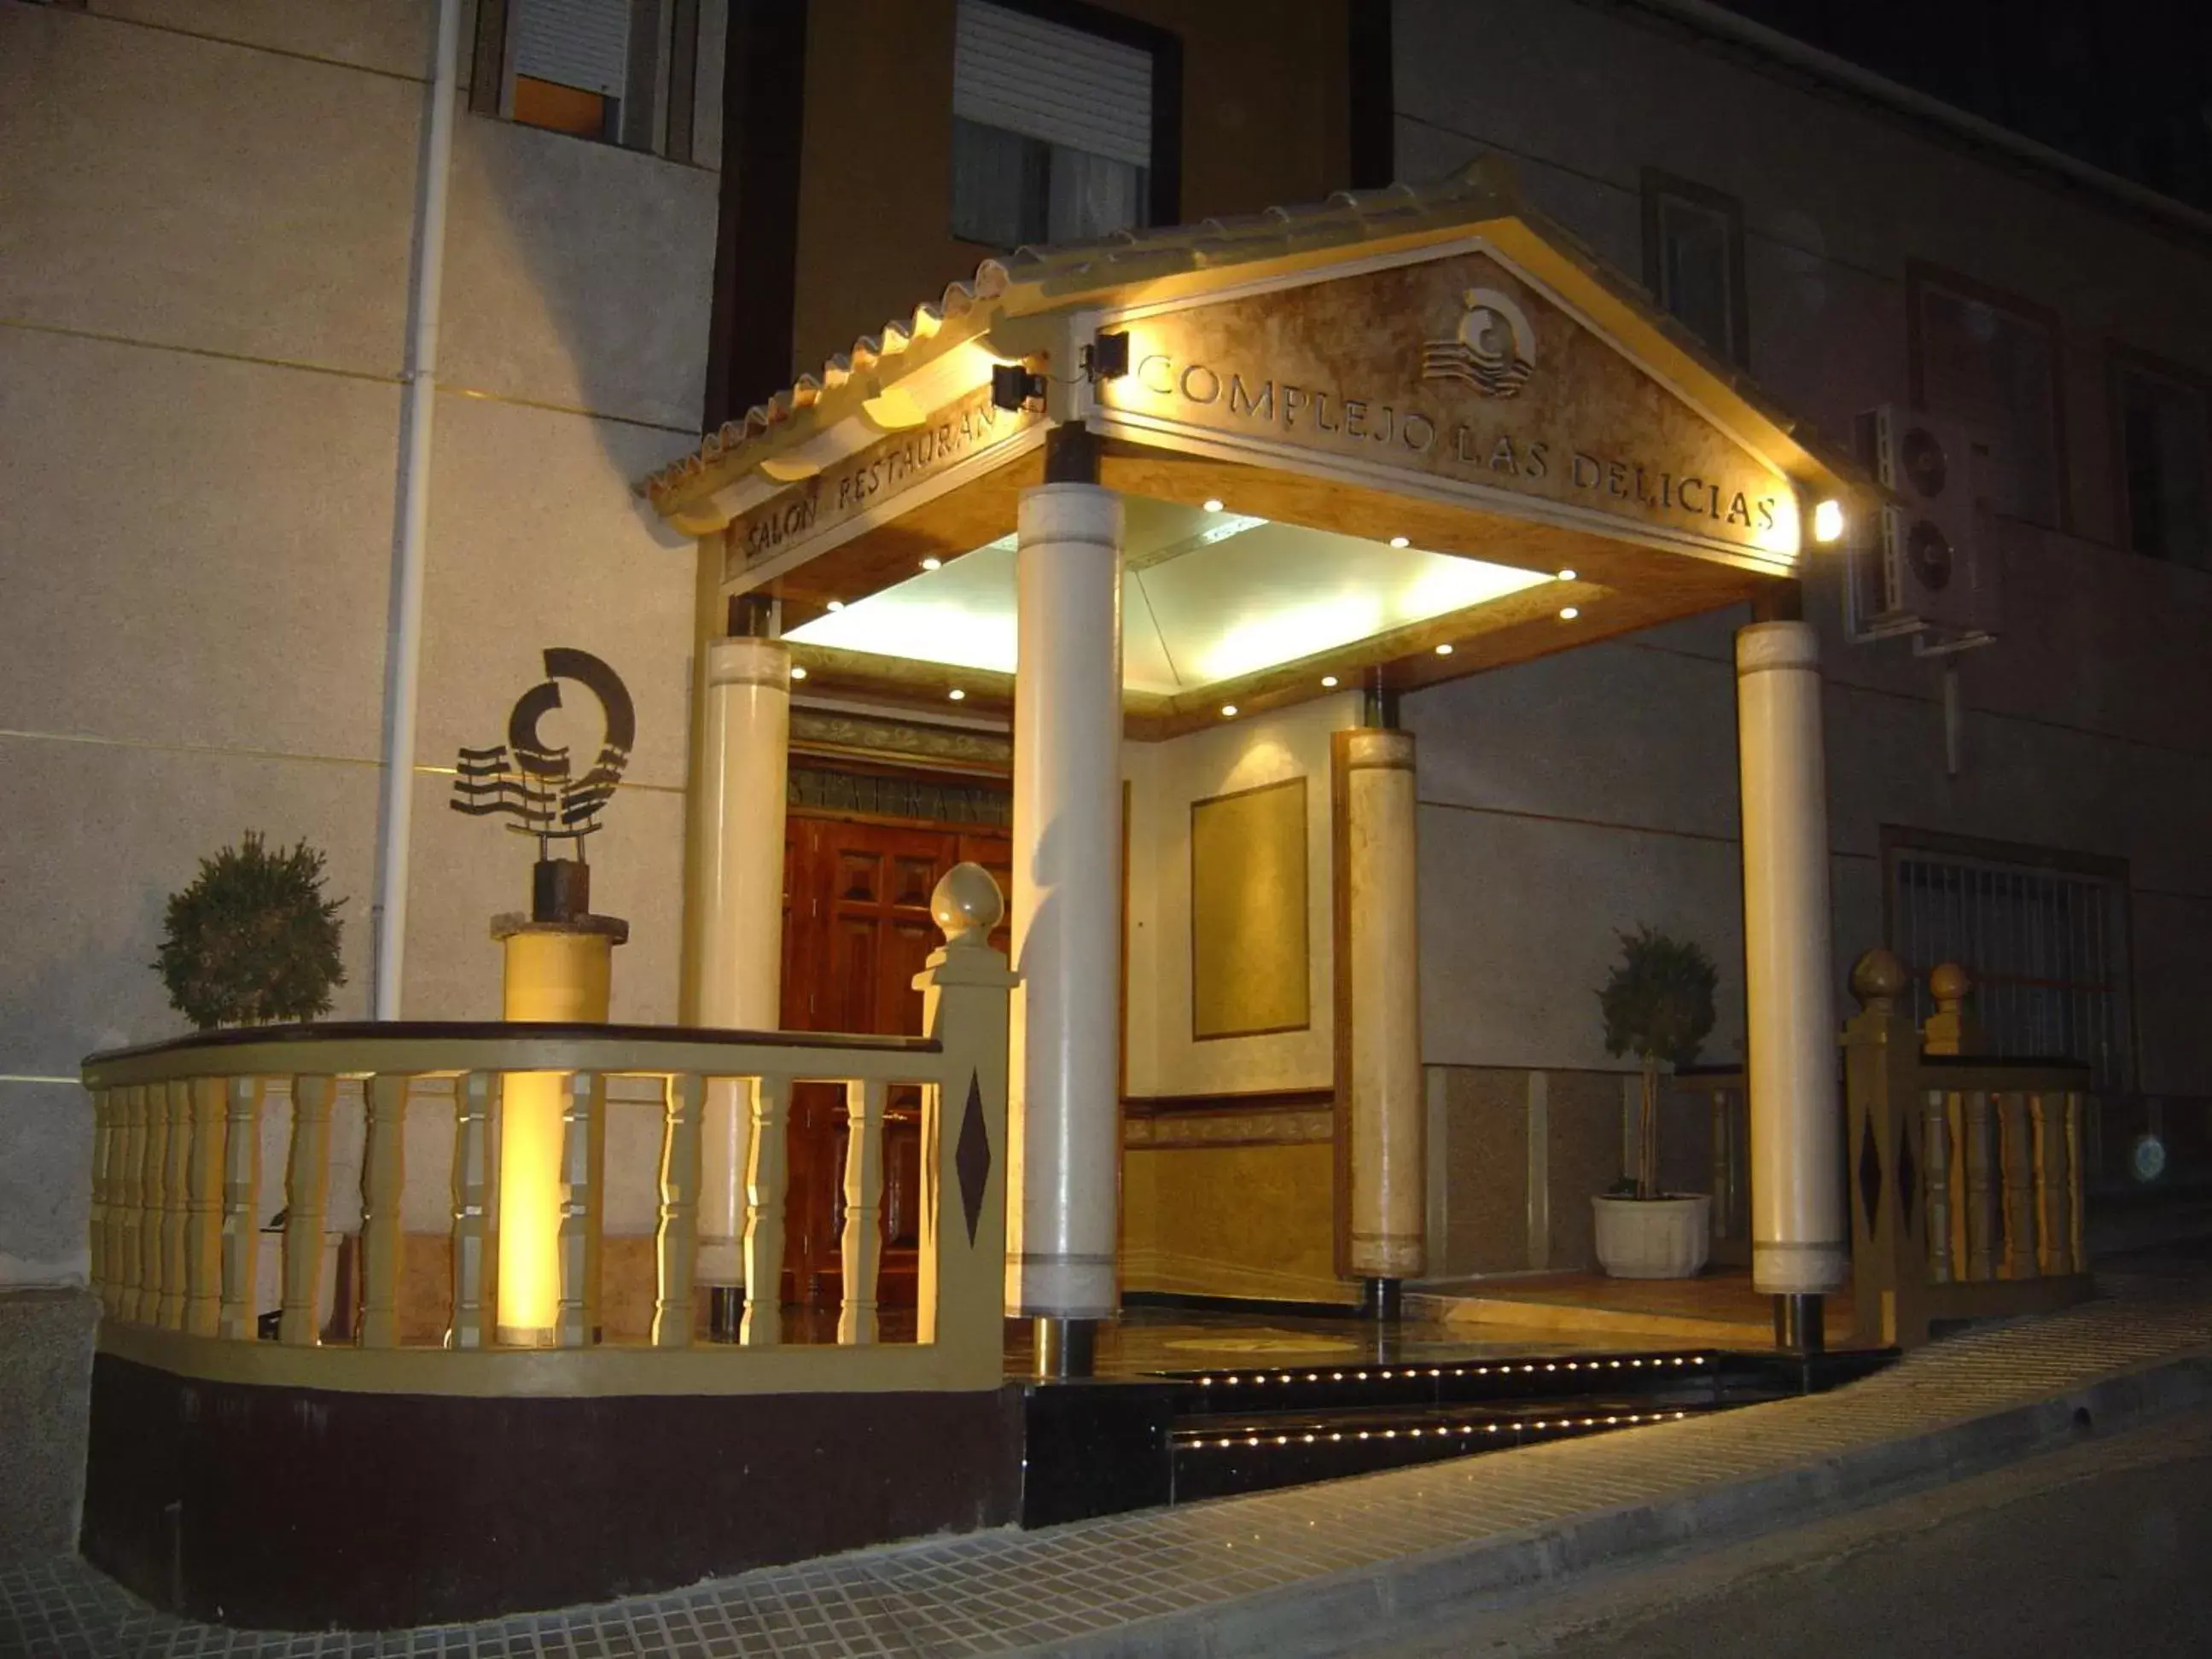 Facade/Entrance in Hotel La Moraleda - Complejo Las Delicias